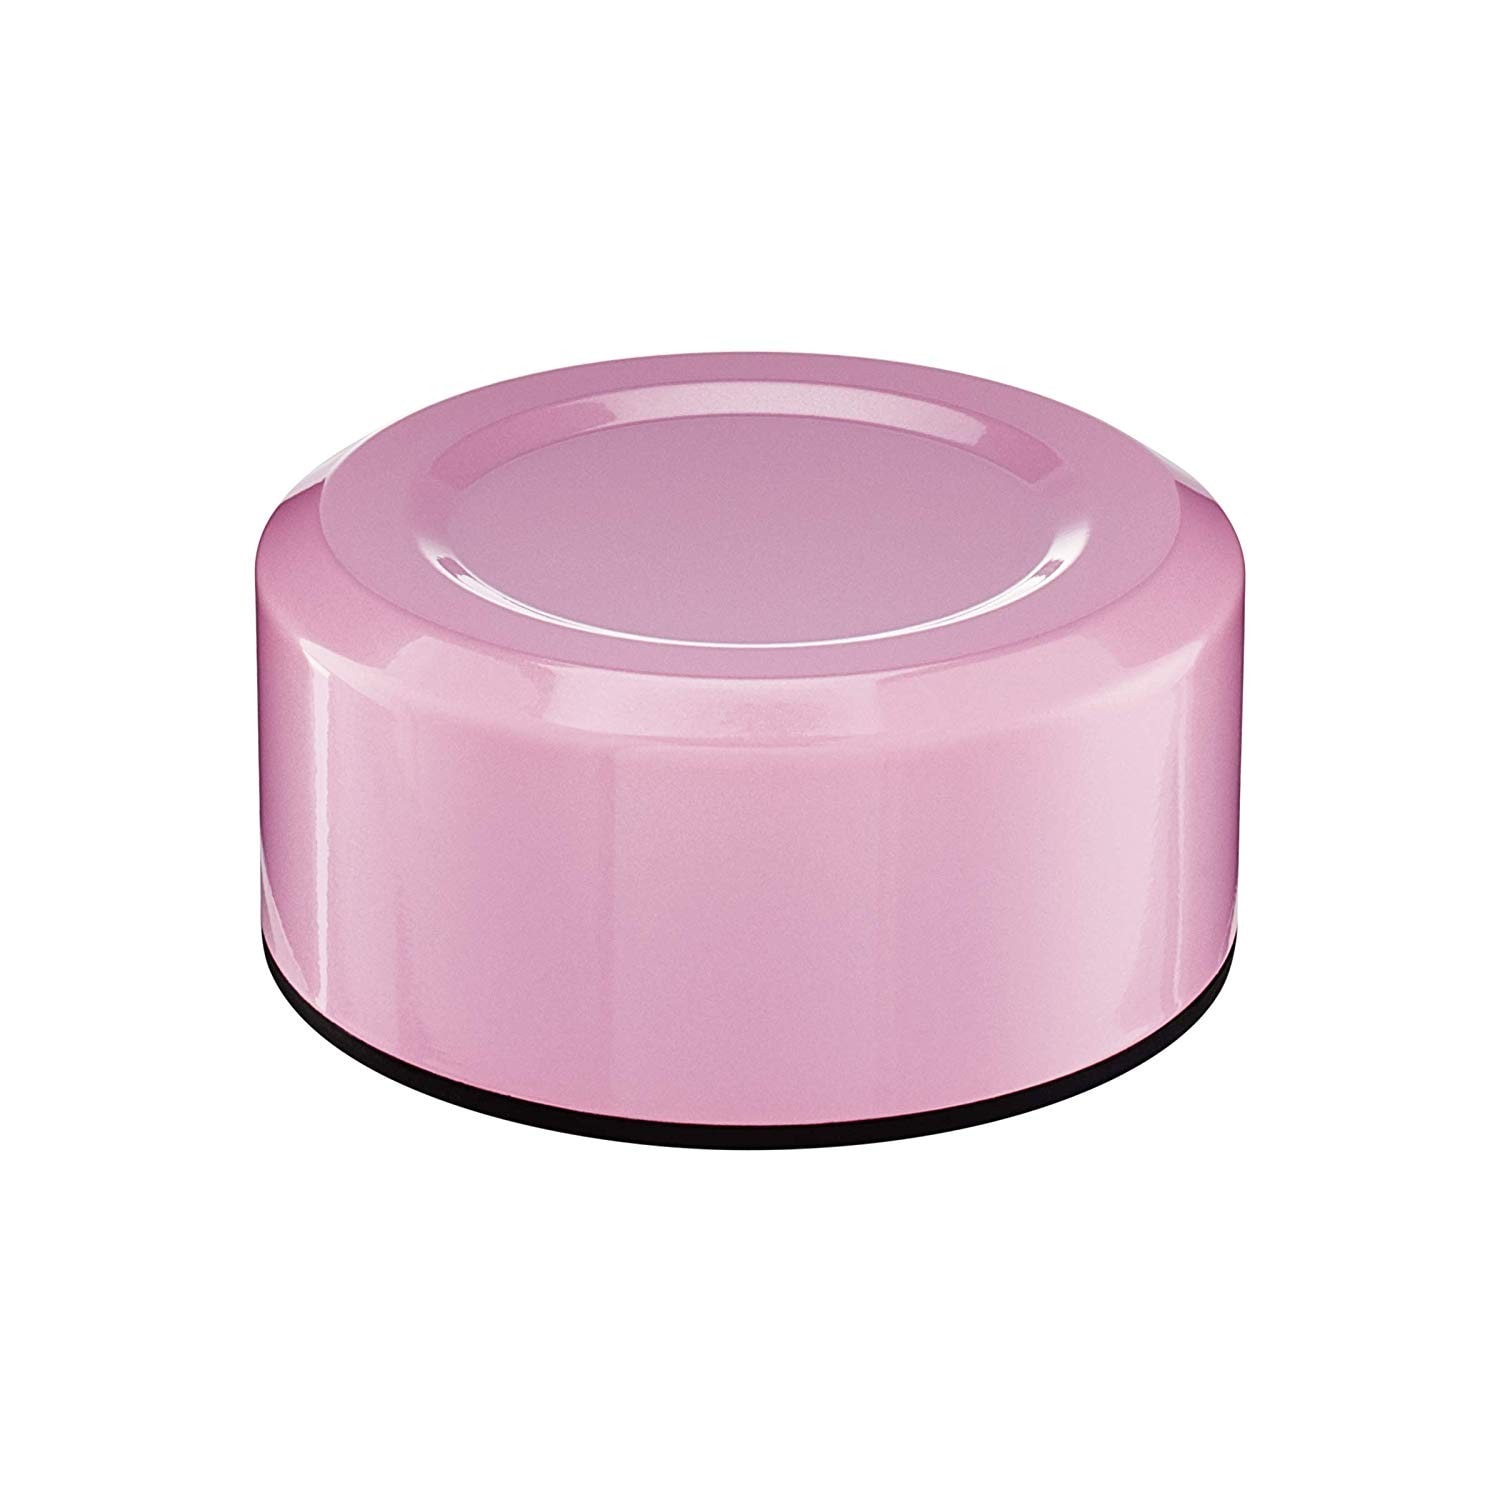 Zdjęcie Kyocera Ceramiczny kubek Twist, różowy